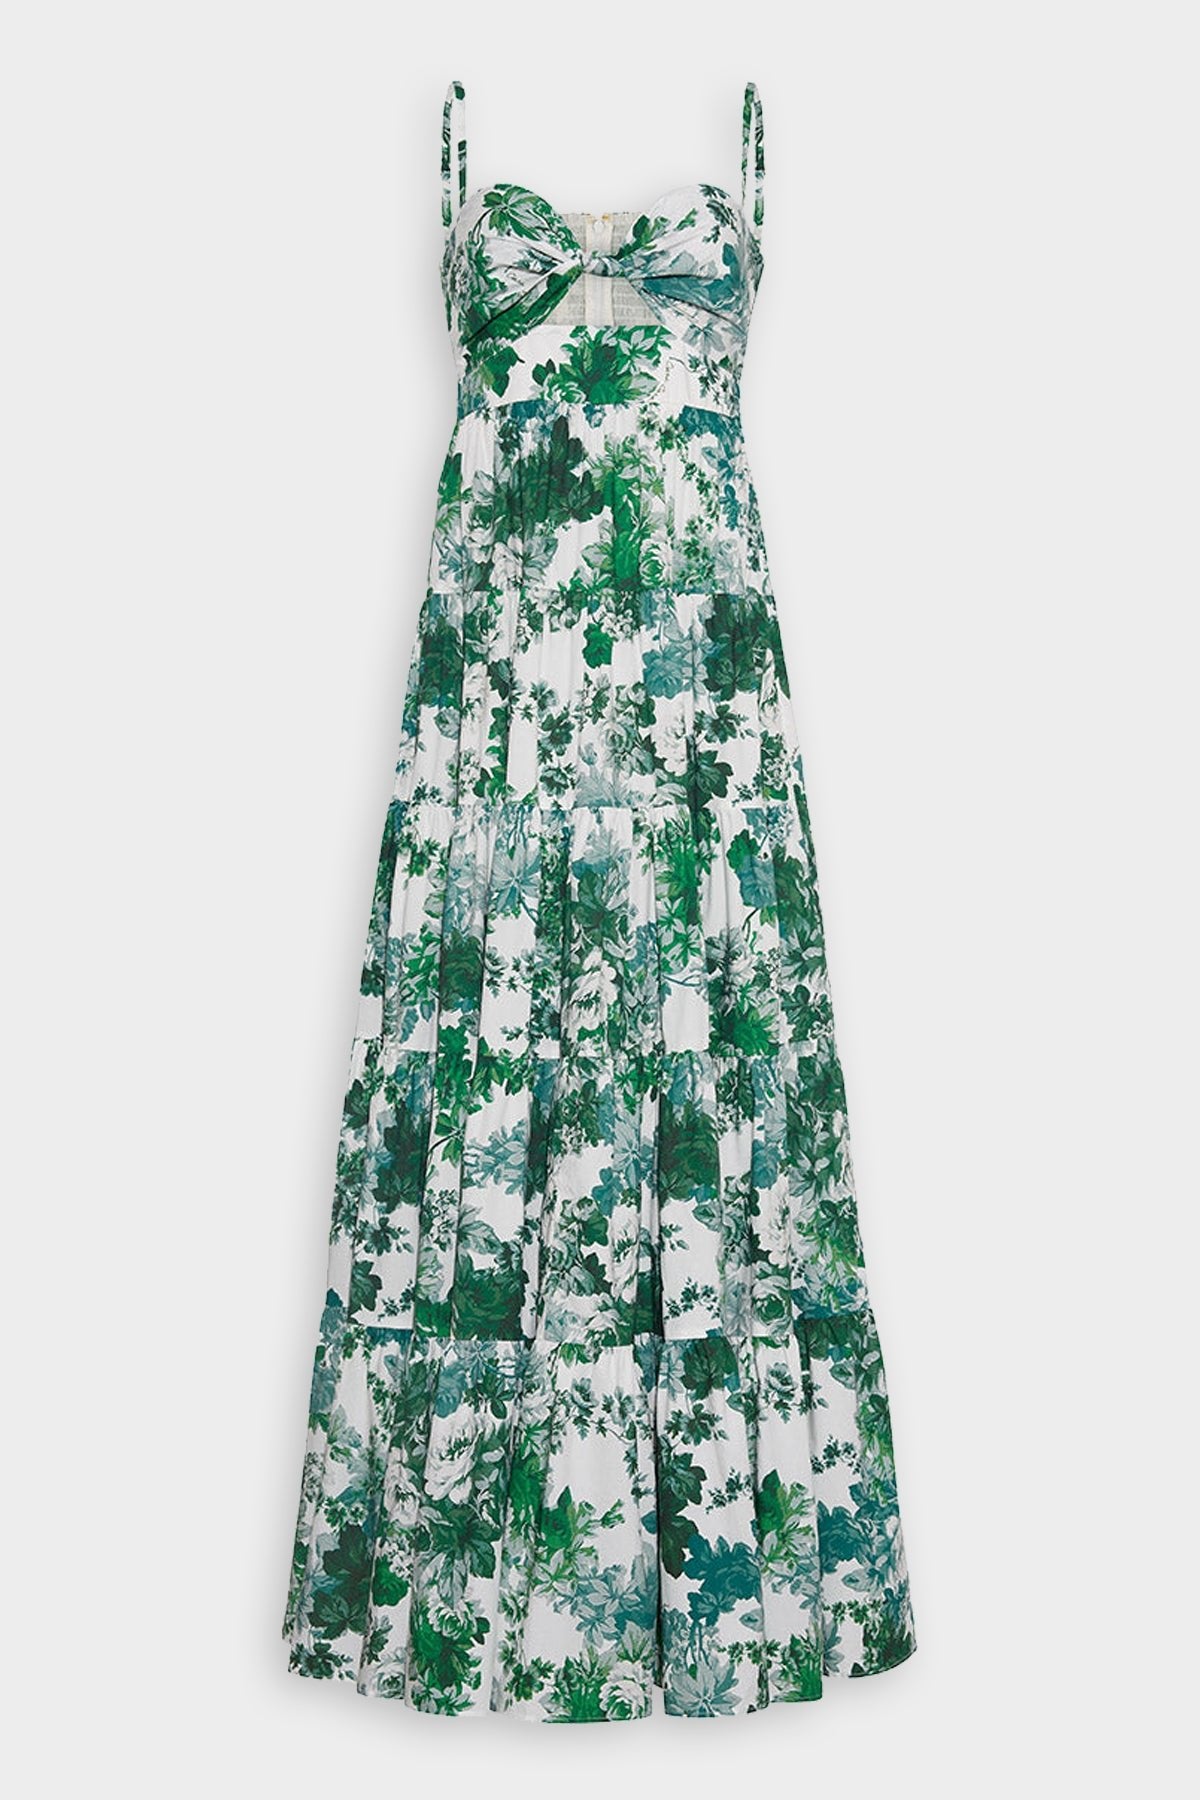 Delilah Dress in Nordic Fields Olive - shop-olivia.com